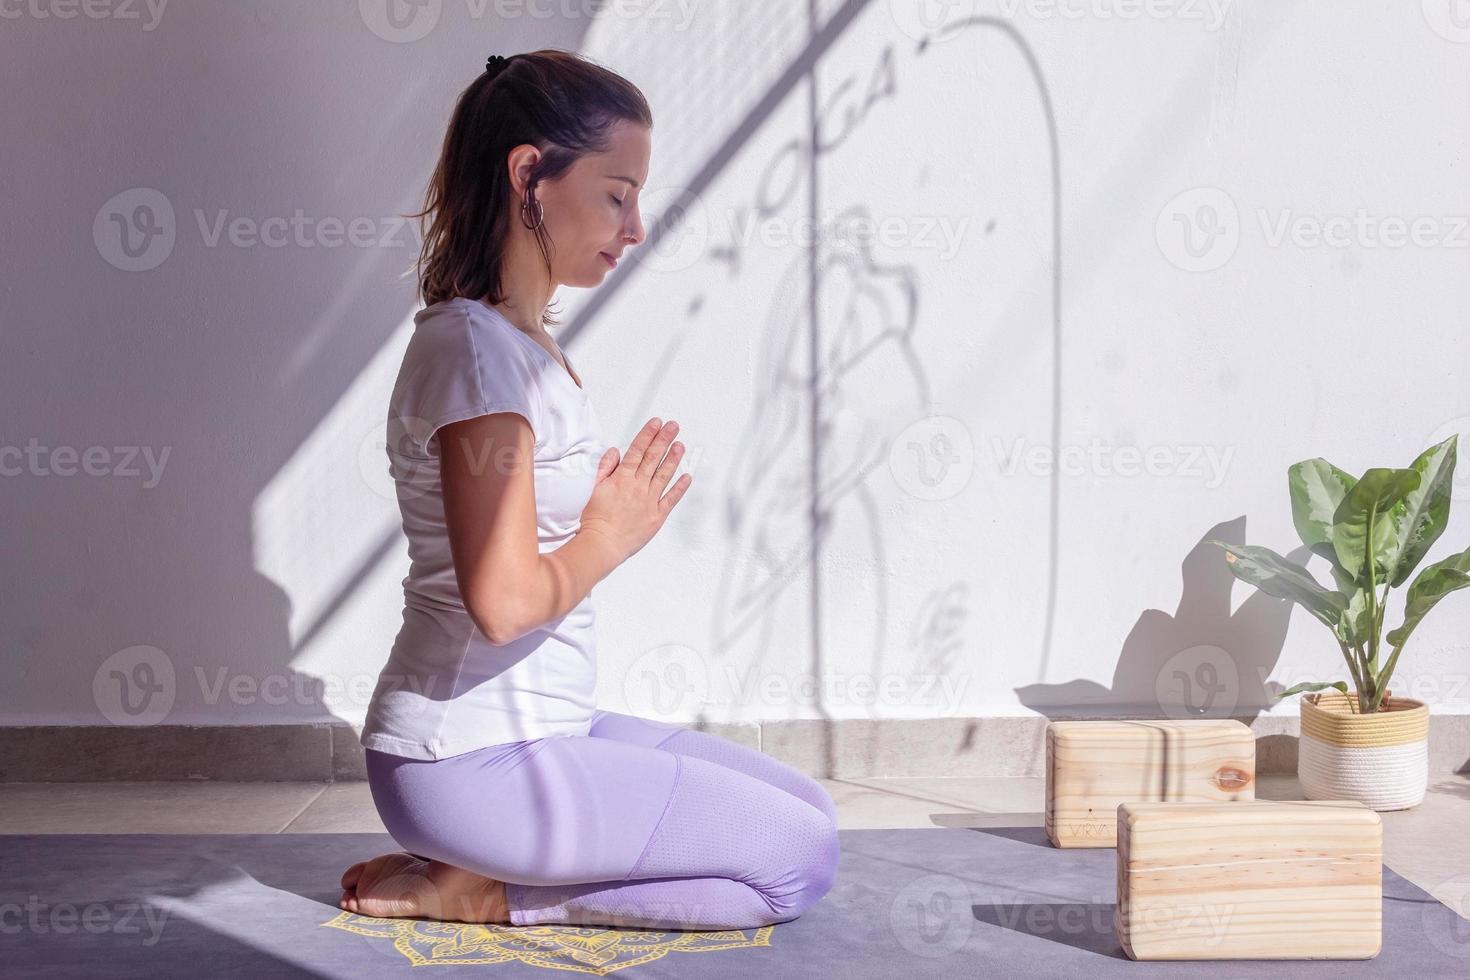 jovem em sua prática diária de meditação foto